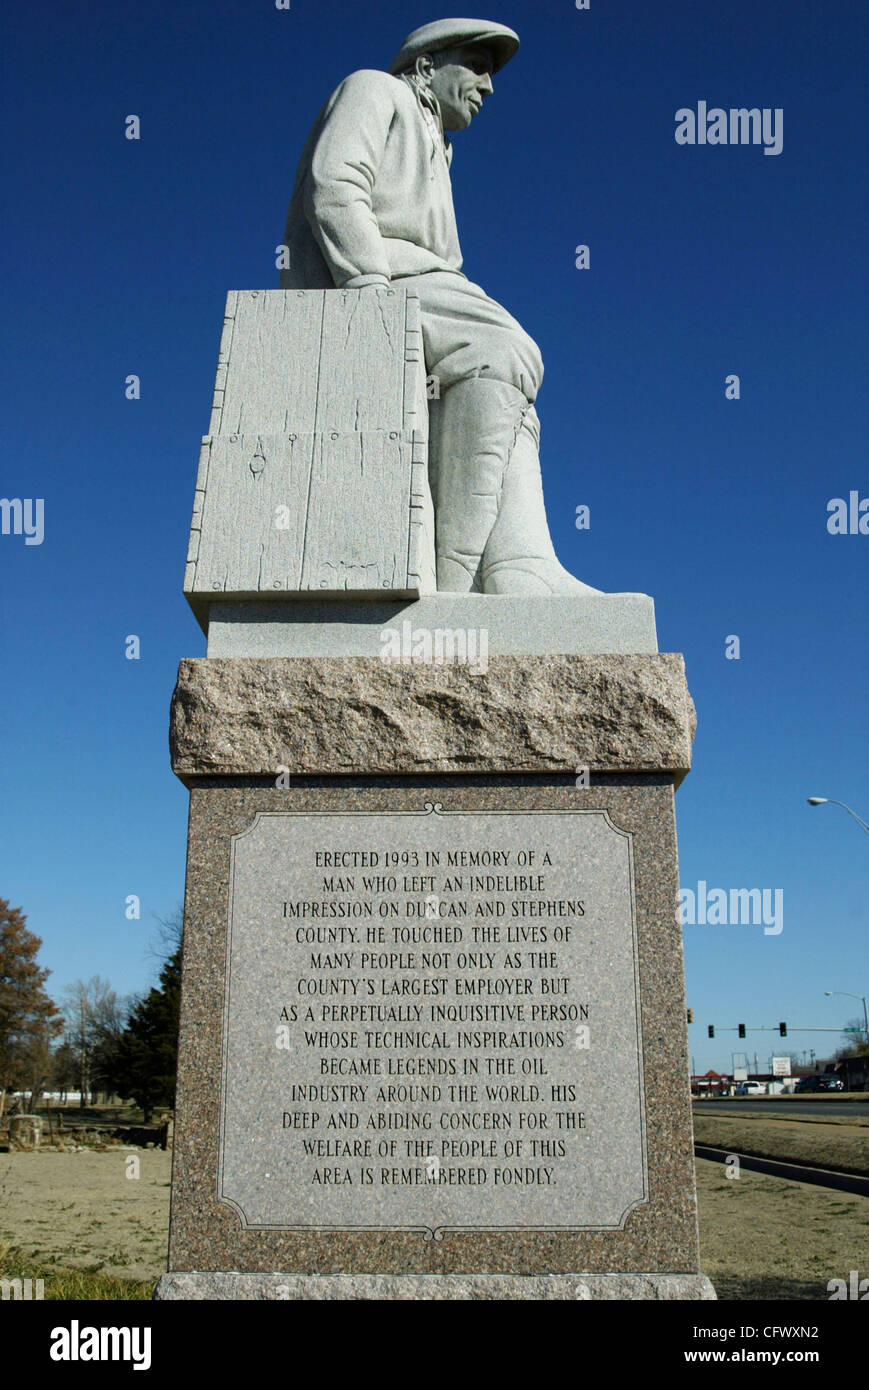 Marzo 04, 2007 - Duncan, Oklahoma, Estados Unidos - una estatua en honor a especialista petrolero ERLE P. HALLIBURTON está en Duncan Memorial Park en EE.UU. Highway 81, una parte de la Chisholm Trail. (Crédito de la imagen: (c) Robert Hughes/ZUMA Press) Foto de stock